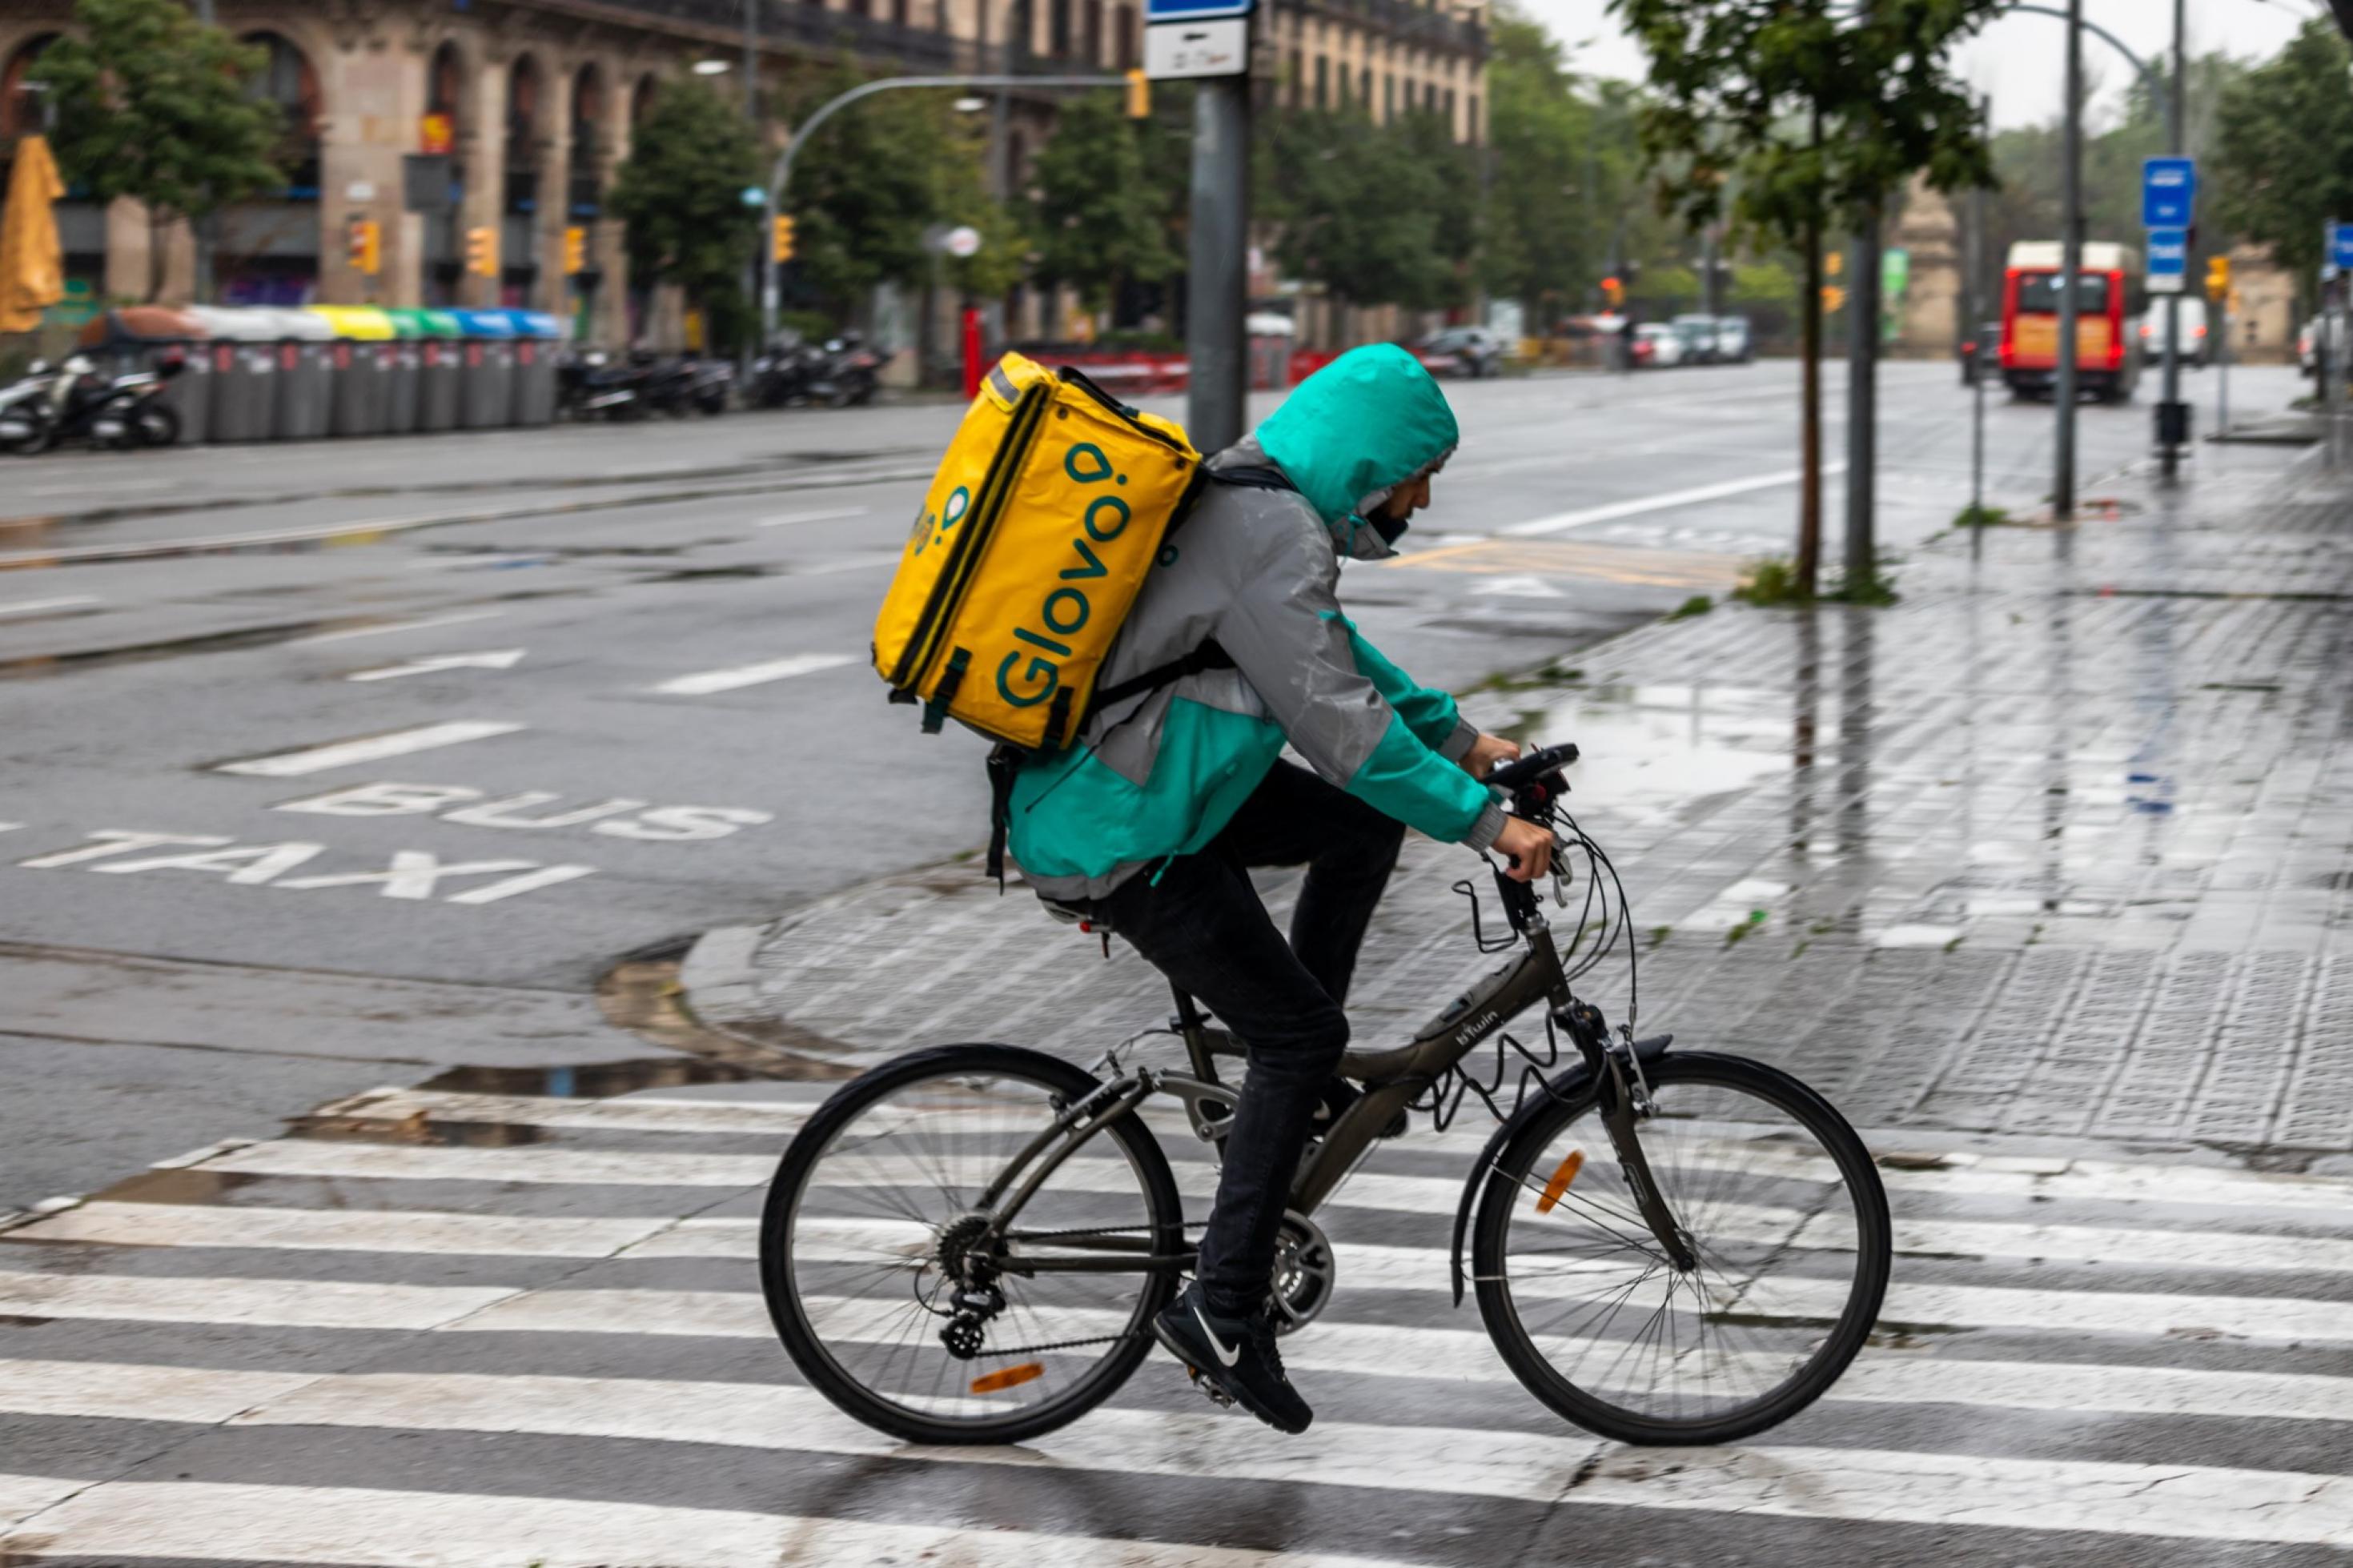 Ein Lieferbote fährt in einer spanischen Stadt über eine regennasse Straße, auf dem Rücken eine der charakteristischen quadratischen Lieferboxen.